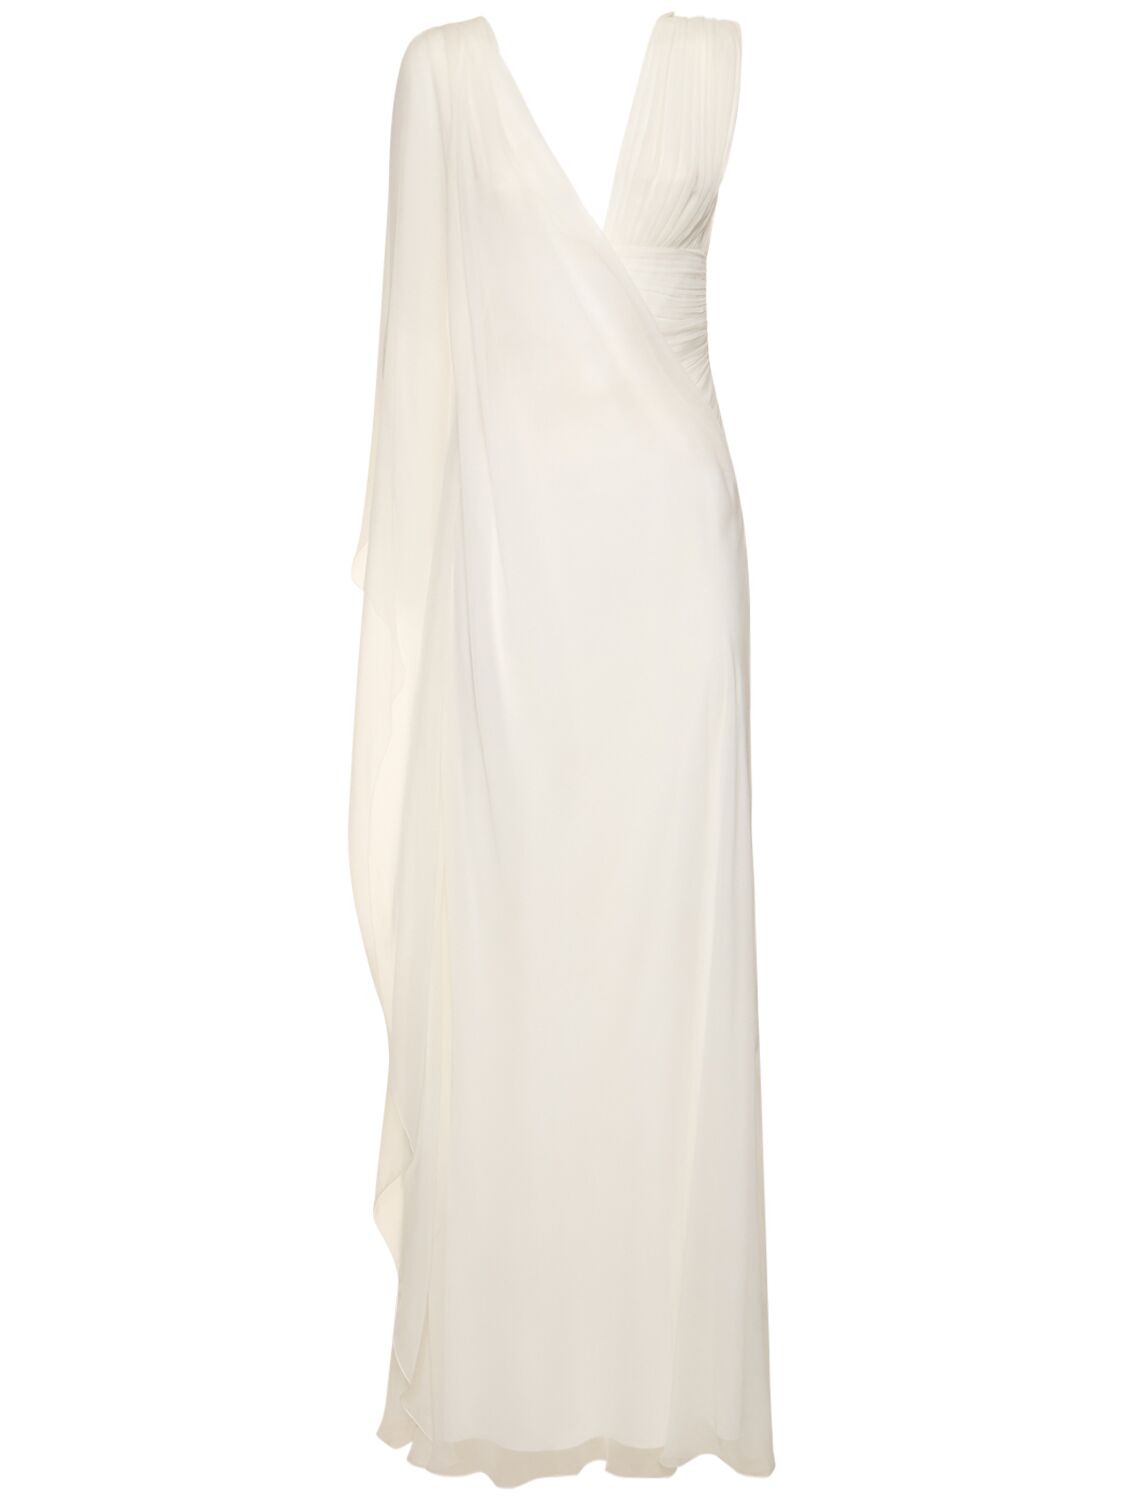 Image of Draped Chiffon Long Dress